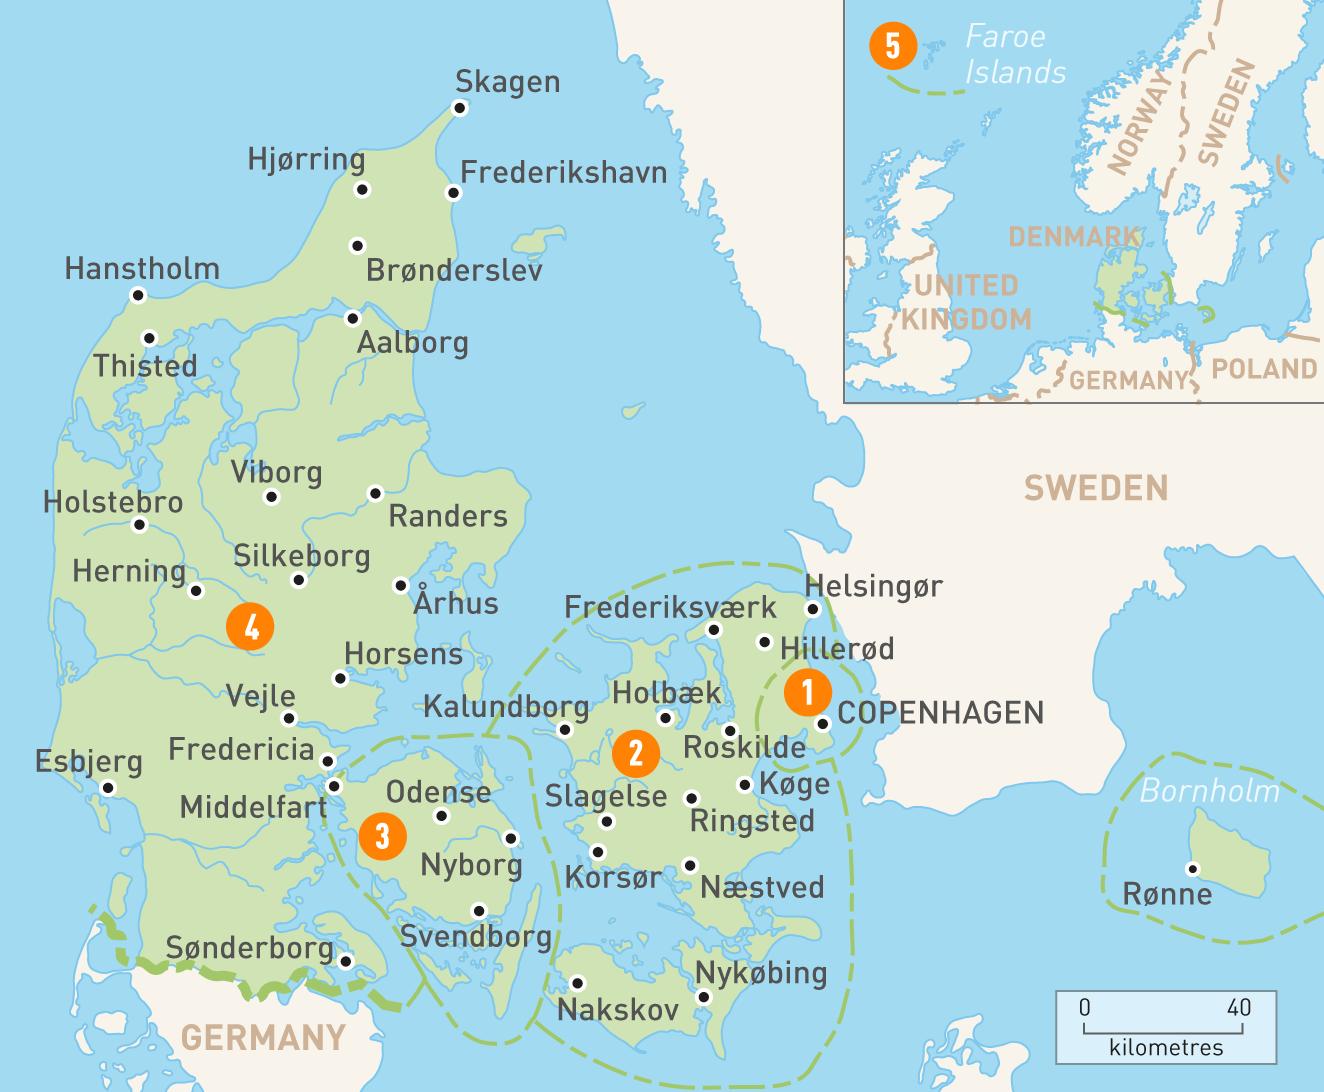 Tanskan saarilla kartta - Kartta tanskan saaret (Pohjois-Eurooppa - Eurooppa )